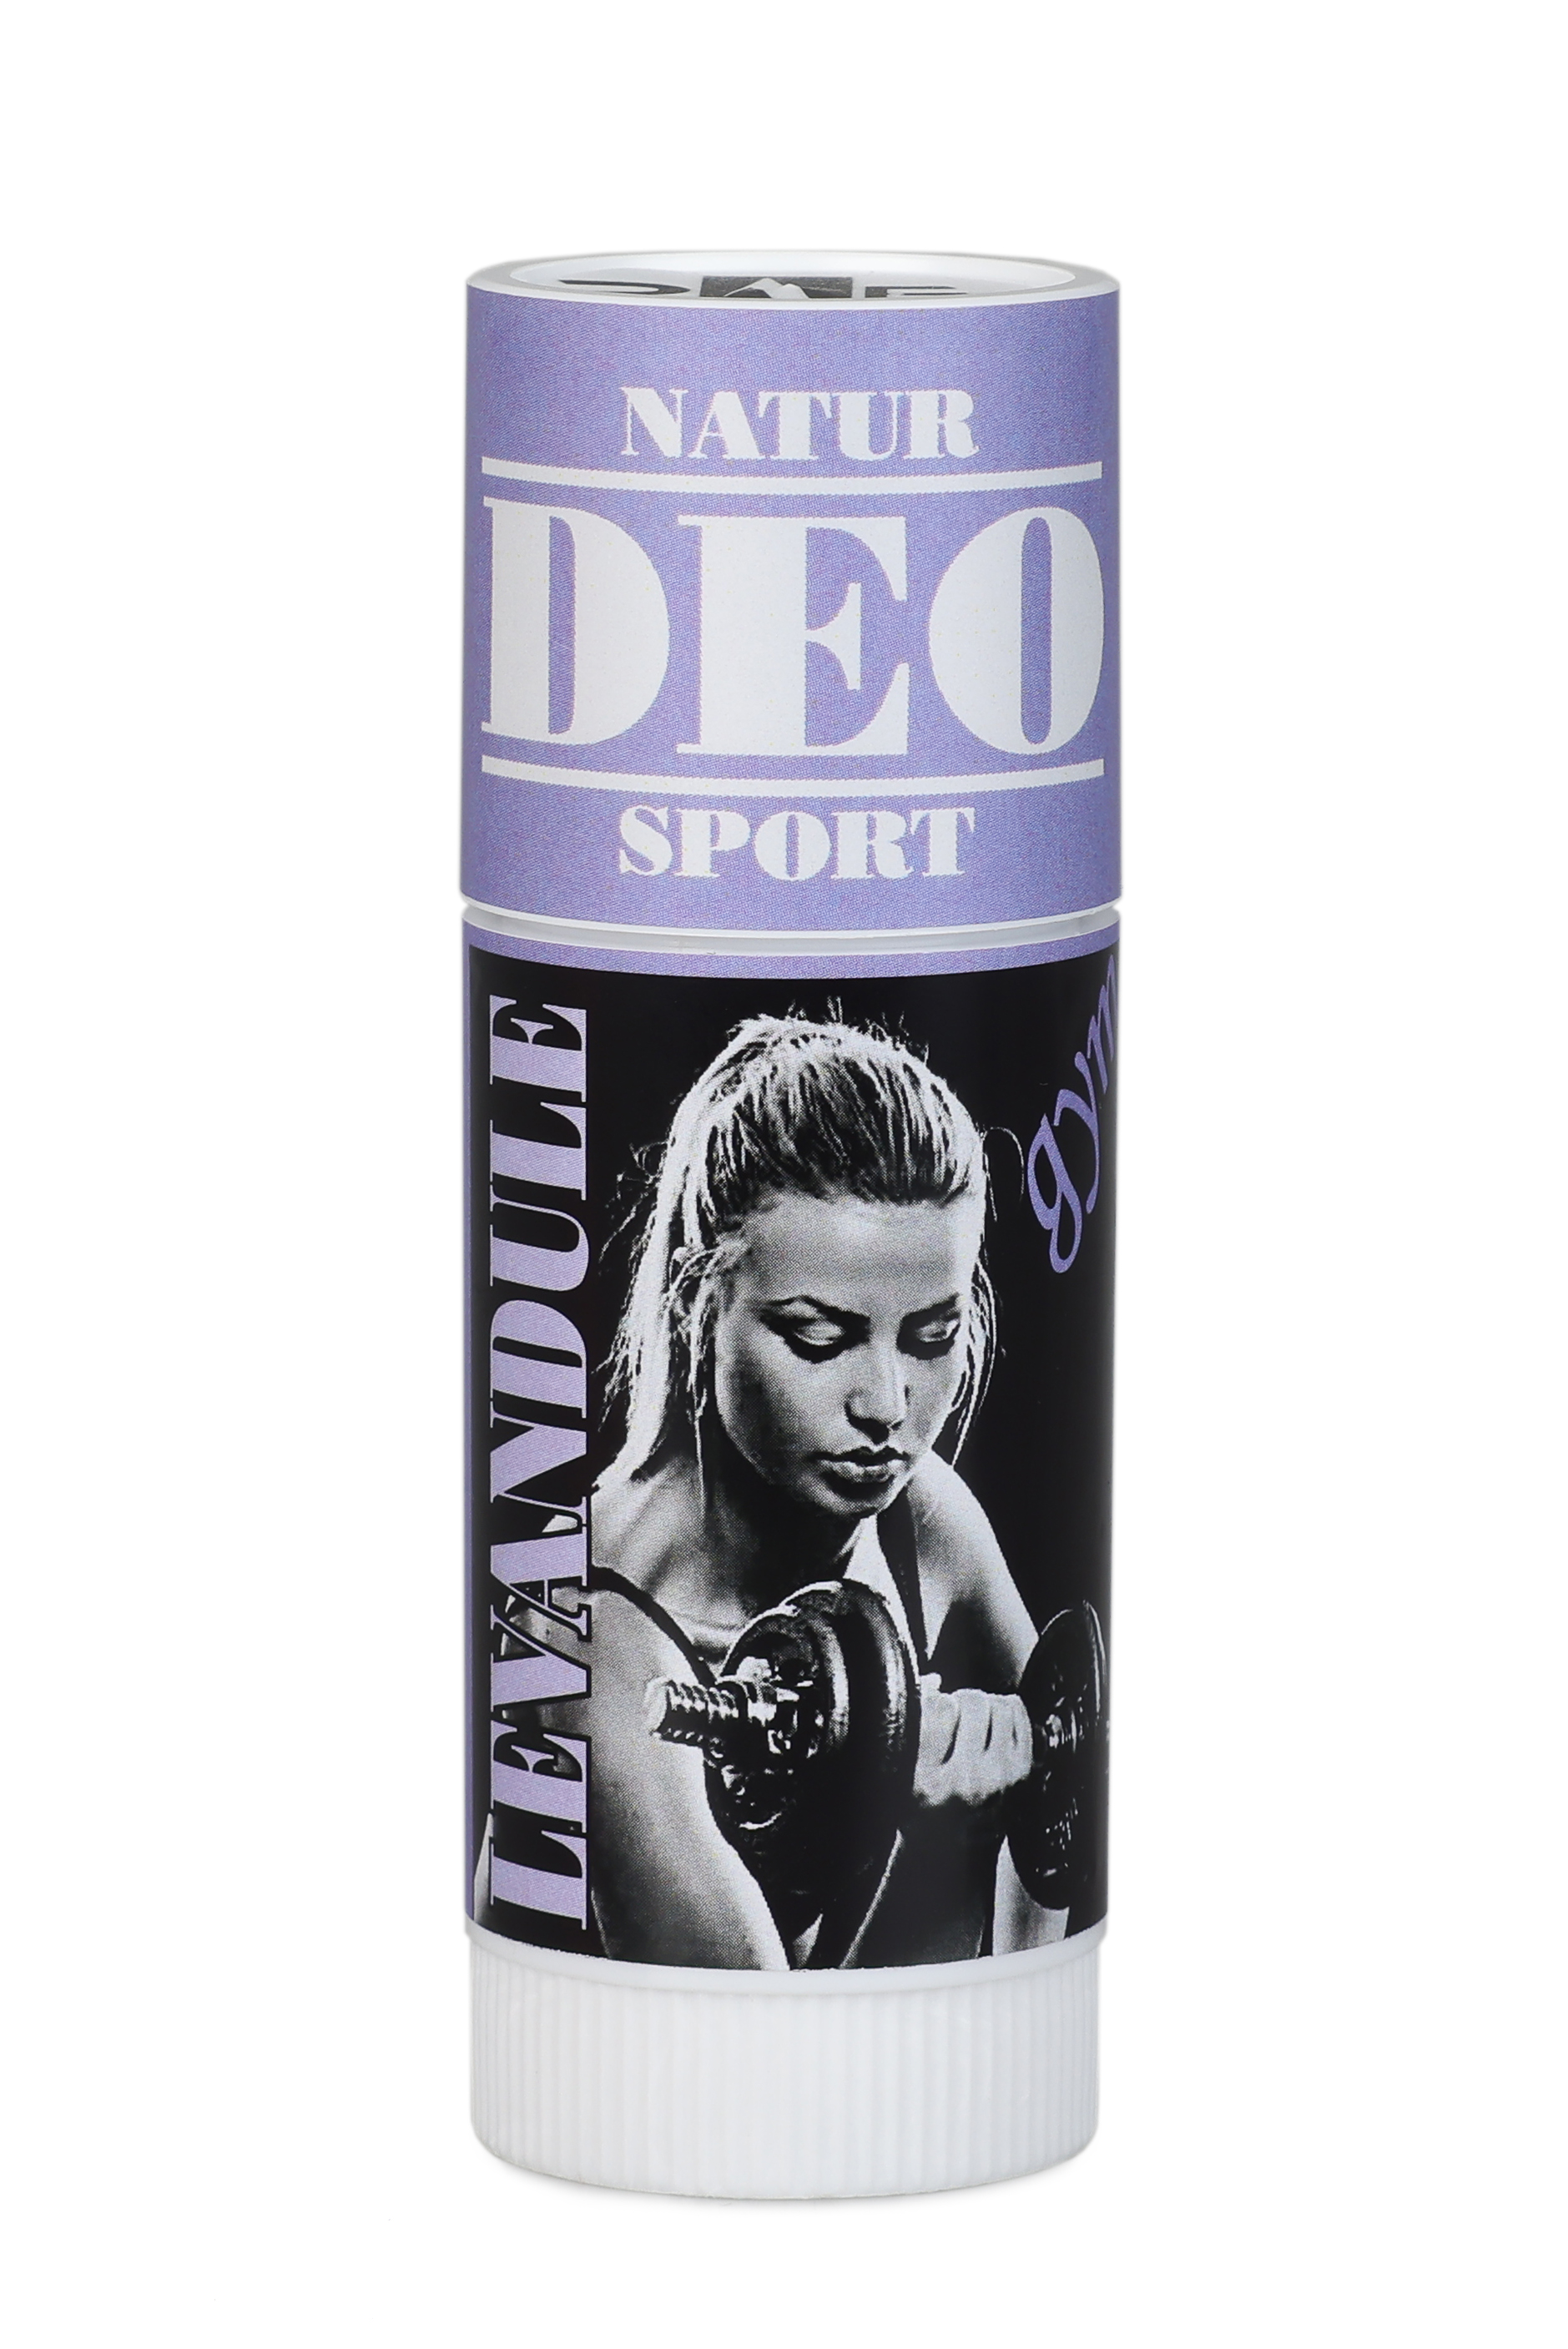 Natur sport deodorant levandule 25 ml